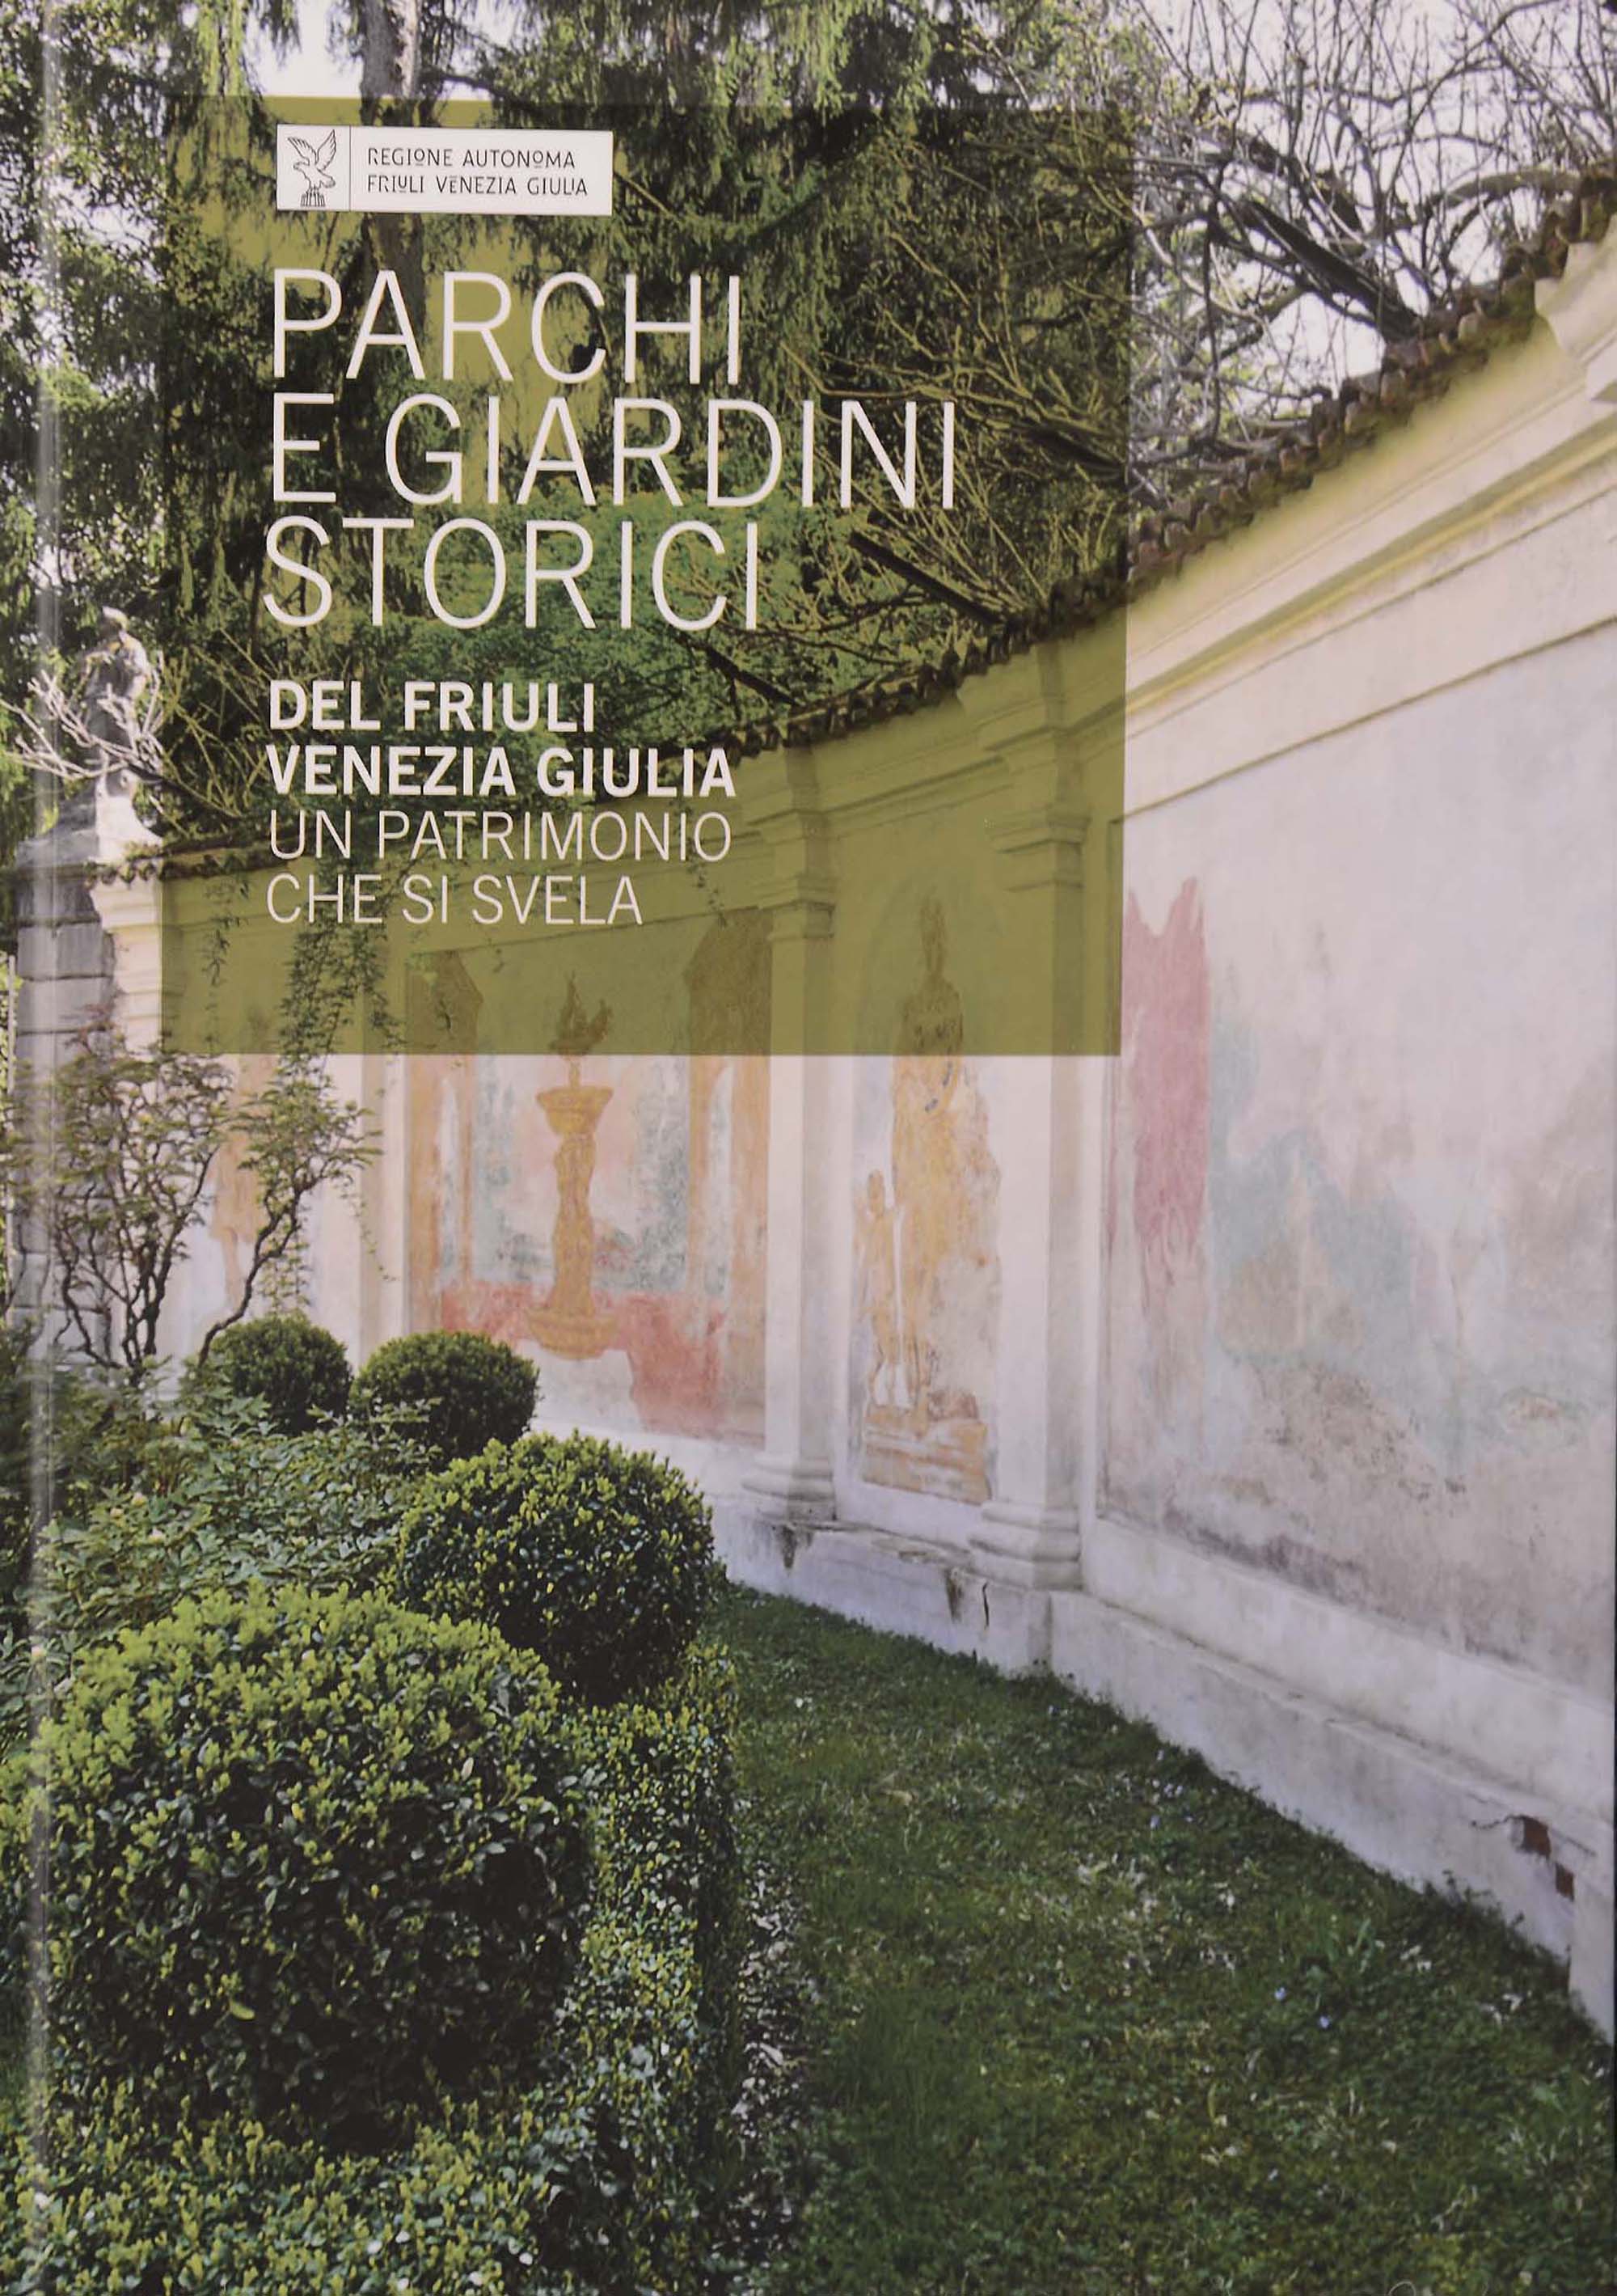 Copertina del libro "Parchi e Giardini storici del Friuli Venezia Giulia. Un patrimonio che si svela" (edizione 2013)